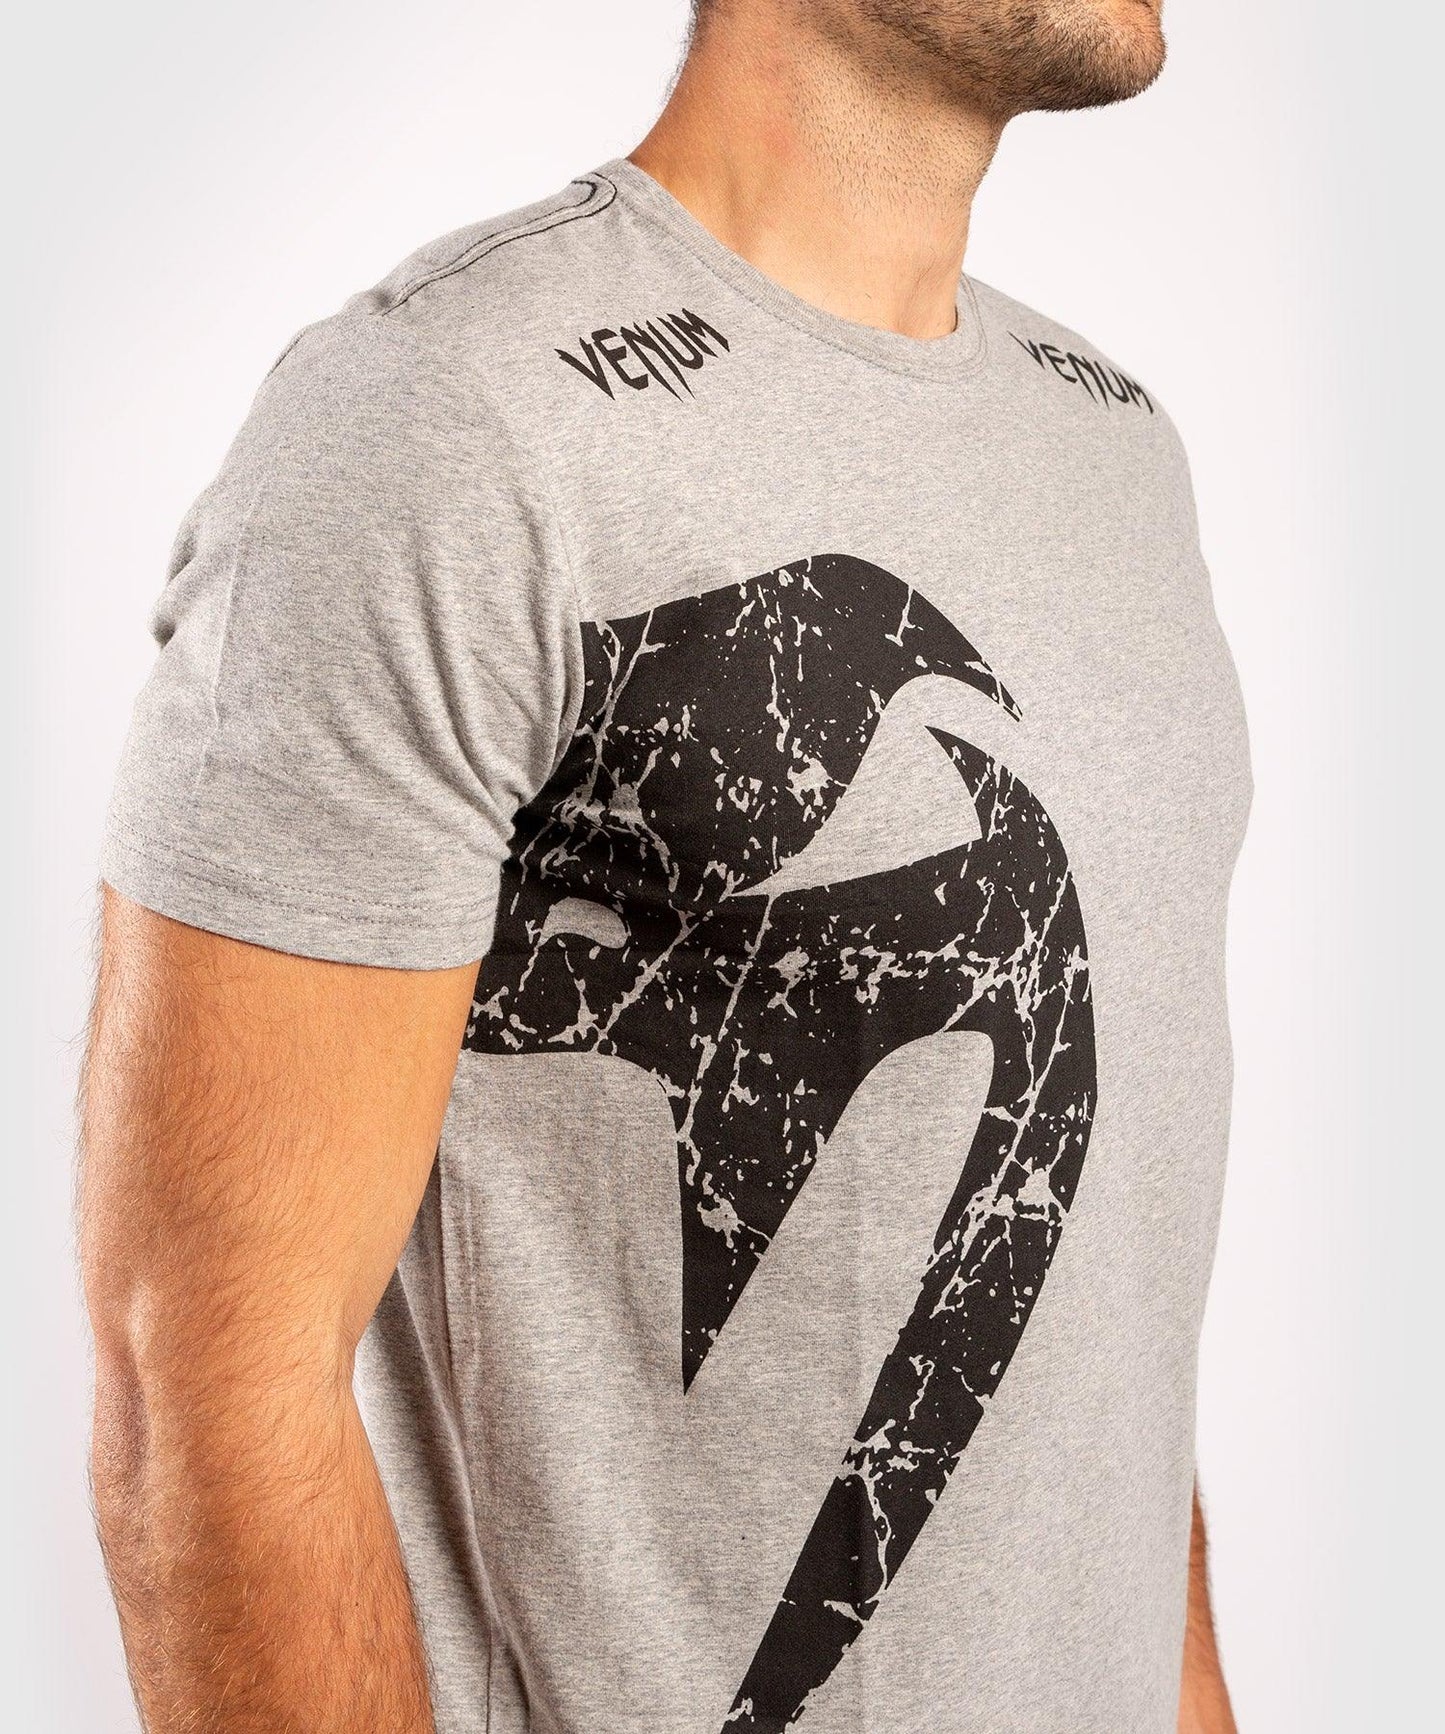 Venum Giant T-shirt - Grey/Black Picture 4